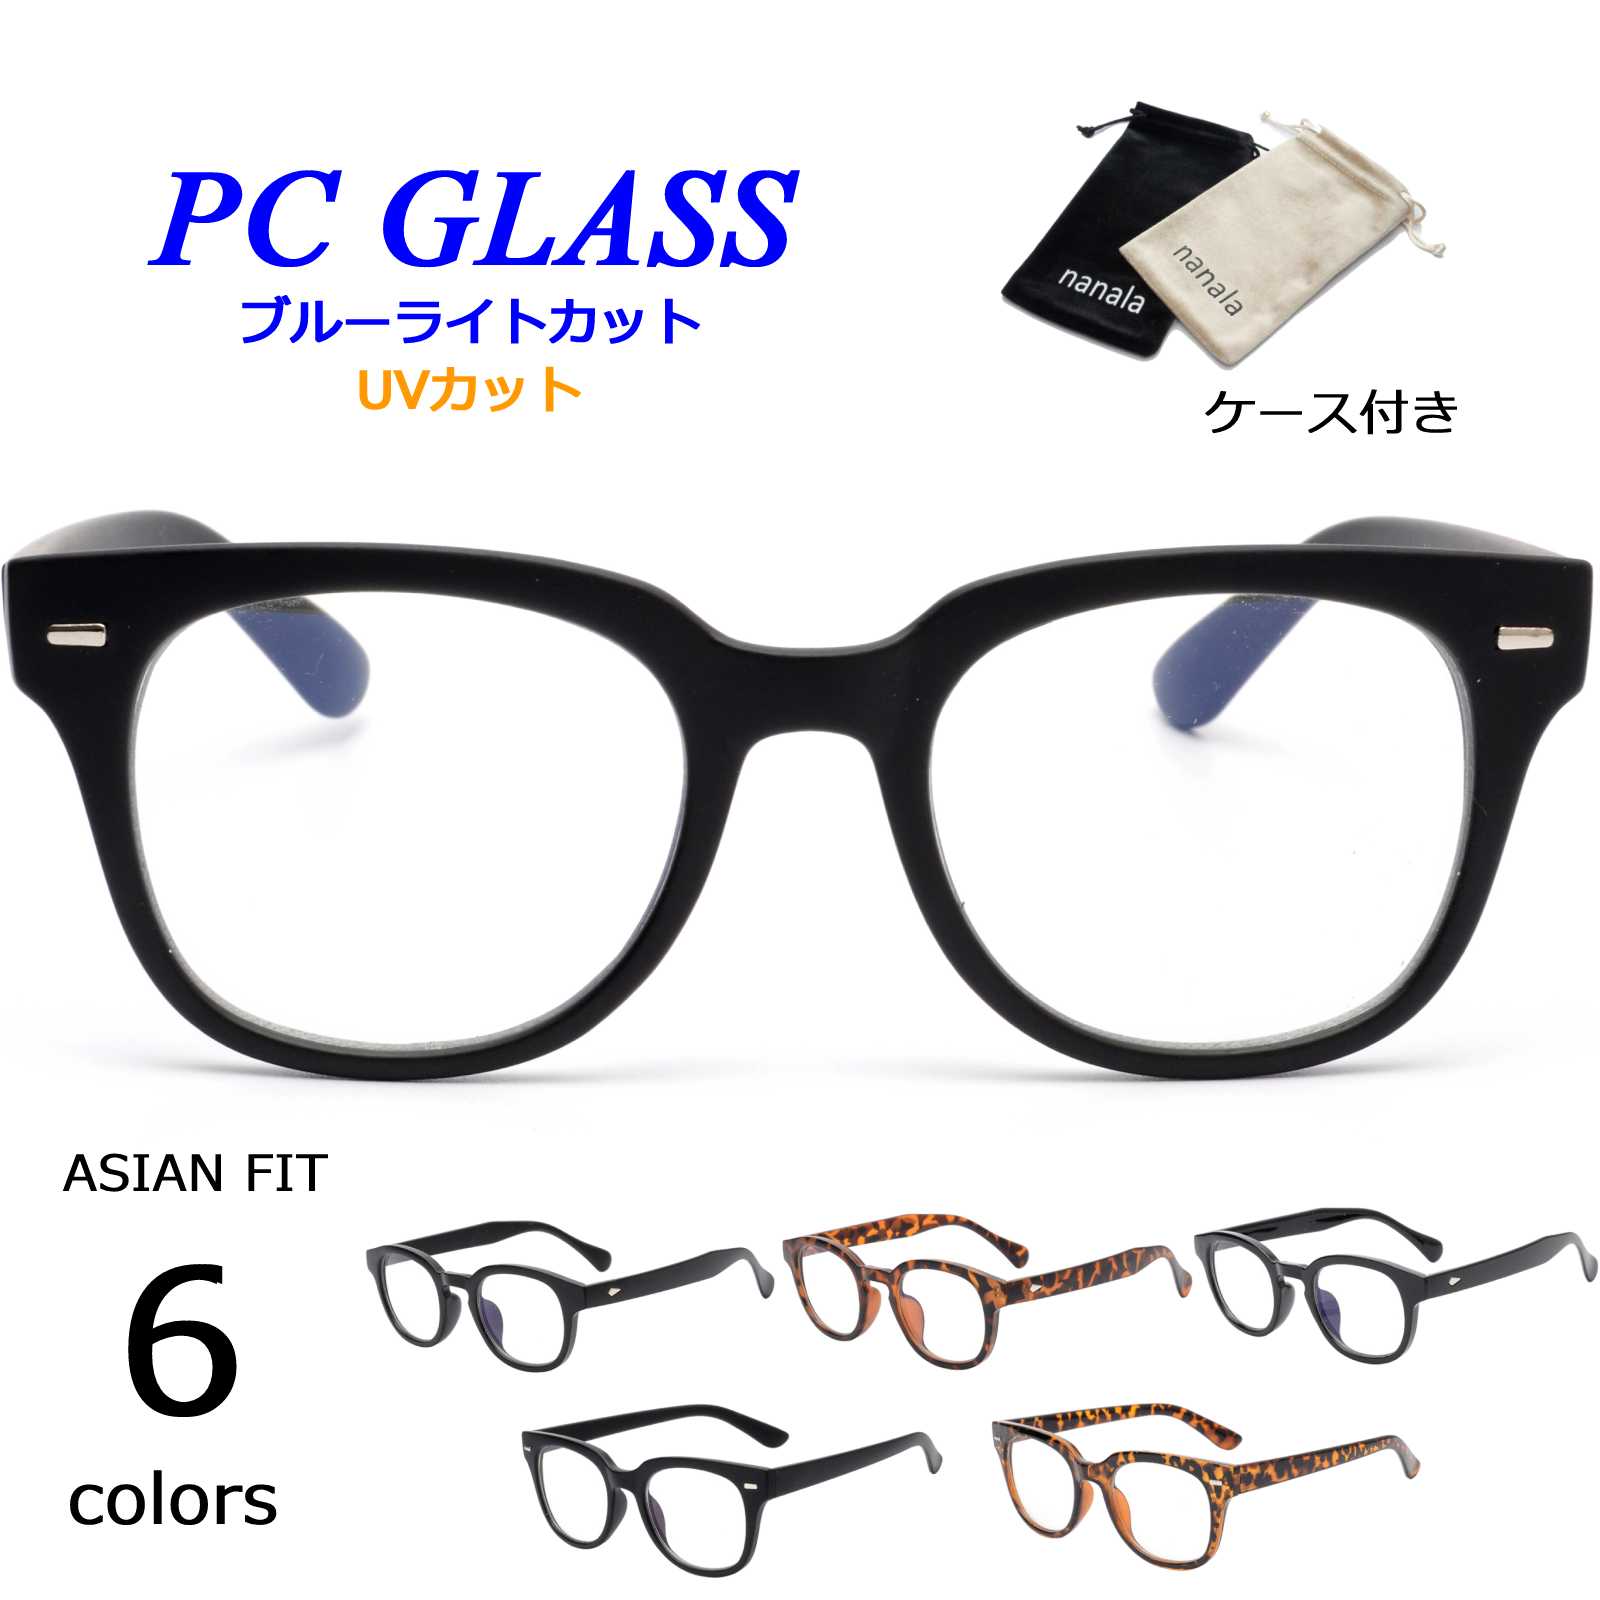 【6色展開】 《nanala kamakuraオリジナル ブルーライトカットメガネ》 ・PC(パソコン)やスマートフォンの画面から出るブルーライト(青色光)をカットし目の疲れを軽減させます。 ・メガネにより、画面がかすかに黄色味がかって見えますが、ゆがみもなくとてもクリアで自然なかけ心地。 ・【nanala kamakuraサングラス】人気モデルが新たに登場！リモートワークなどでもおしゃれを楽しめます。 男性からも女性からも圧倒的な支持を受けておりますウェイントンフレーム。 鼻パッドは高めに設定されたアジアンフィッティングとなっており、日本人の顔にぴったりとフィットする形です。 《【nanala】オリジナルメガネポーチ付き》 べロア素材のメガネポーチが付属します。 『ブラック』『ベージュ』の2色よりお選びいただけます。 カラー選択時にお選び下さい。 【素材】/ ブルーライト・UV(紫外線)カットレンズ ブルーライトカット率:25% UV(紫外線)カット率:99% 【生産国】中国 【関連キーワード】 人気 メガネ ブルーライトカットメガネ ブルーライトカットレンズ PCメガネ PCグラス PC眼鏡 PCGLASSES PCレンズ パソコンメガネ パソコン用メガネ スマホメガネ スマホグラス スマホ用メガネ スマートフォン用メガネ 画面 液晶 スクリーン メンズ眼鏡 レディース眼鏡 メンズメガネ レディースメガネ クリアめがね 眼鏡 だてメガネ 伊達眼鏡 ユニセックスメガネ 男女兼用 男性 女性 ファッション ファッションメガネ おしゃれ かっこいい アクセサリー ファッションアクセサリー シンプル 定番 リモートワークアイテム テレワークアイテム オフィスワークアイテム オフィスグッズ お仕事グッズ 小さい 小さめ 大きい 大きめ 軽量 持ち運び ケース ケース付き ブランド プレゼント クリスマス クリスマスプレゼント 誕生日プレゼント ギフト 贈り物 贈答 贈答品 彼氏 彼女 ペア ペアコーデ まぶしい 眩しい 日よけ 紫外線カット 紫外線対策 UVカット UV シミ対策 シミ予防 シミそばかす予防 対策 目を保護 花粉対策 飛沫対策 飛沫 スクエアメガネ ウェリントンメガネ PCメガネウェリントン nanalaPCメガネ ナナラ nanalakamakura【関連キーワード】 人気 メガネ ブルーライトカットメガネ ブルーライトカットレンズ PCメガネ PCグラス PC眼鏡 PCGLASSES PCレンズ パソコンメガネ パソコン用メガネ スマホメガネ スマホグラス スマホ用メガネ スマートフォン用メガネ 画面 液晶 スクリーン メンズ眼鏡 レディース眼鏡 メンズメガネ レディースメガネ クリアめがね 眼鏡 だてメガネ 伊達眼鏡 ユニセックスメガネ 男女兼用 男性 女性 ファッション ファッションメガネ おしゃれ かっこいい アクセサリー ファッションアクセサリー シンプル 定番 リモートワークアイテム テレワークアイテム オフィスワークアイテム オフィスグッズ お仕事グッズ 小さい 小さめ 大きい 大きめ 軽量 持ち運び ケース ケース付き ブランド プレゼント クリスマス クリスマスプレゼント 誕生日プレゼント ギフト 贈り物 贈答 贈答品 彼氏 彼女 ペア ペアコーデ まぶしい 眩しい 日よけ 紫外線カット 紫外線対策 UVカット UV シミ対策 シミ予防 シミそばかす予防 対策 目を保護 花粉対策 飛沫対策 飛沫 スクエアメガネ ウェリントンメガネ PCメガネウェリントン nanalaPCメガネ ナナラ nanalakamakura